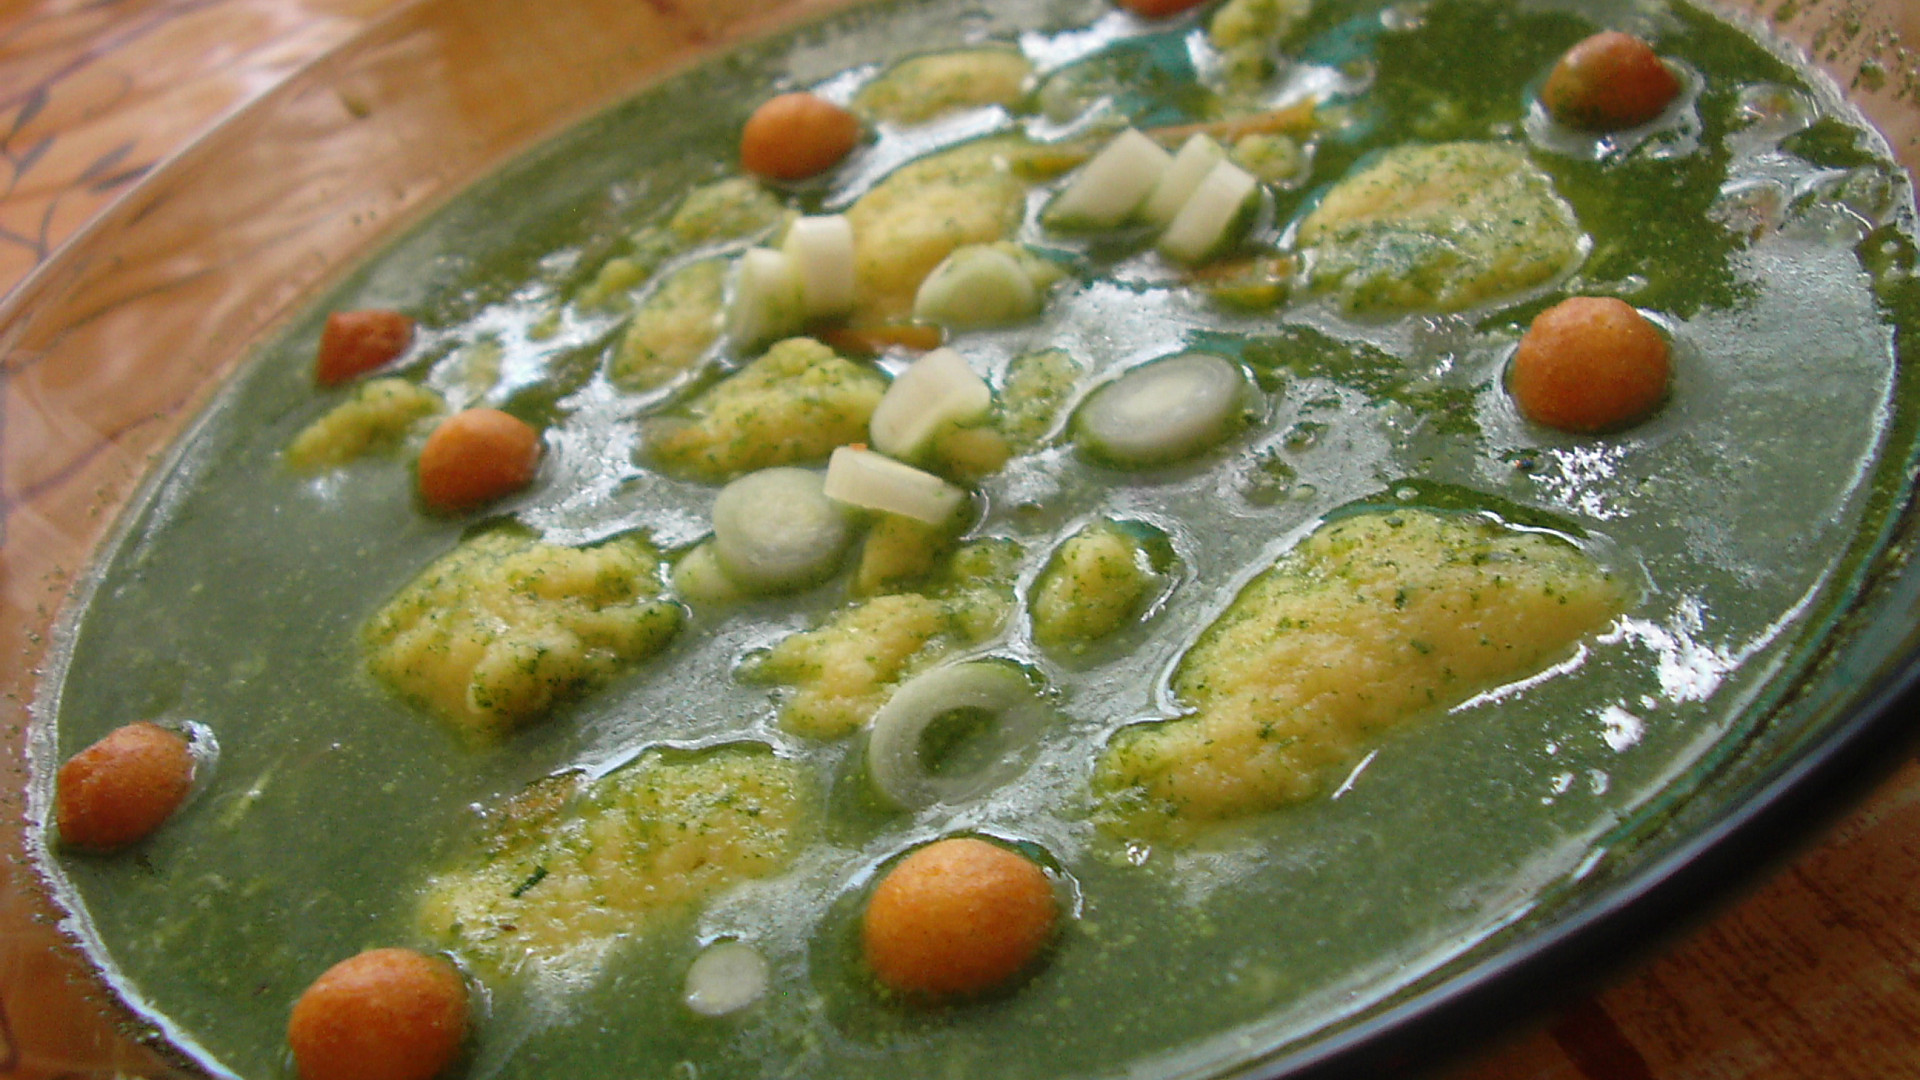 Špenátová polévka s mrkví a sýrovými noky